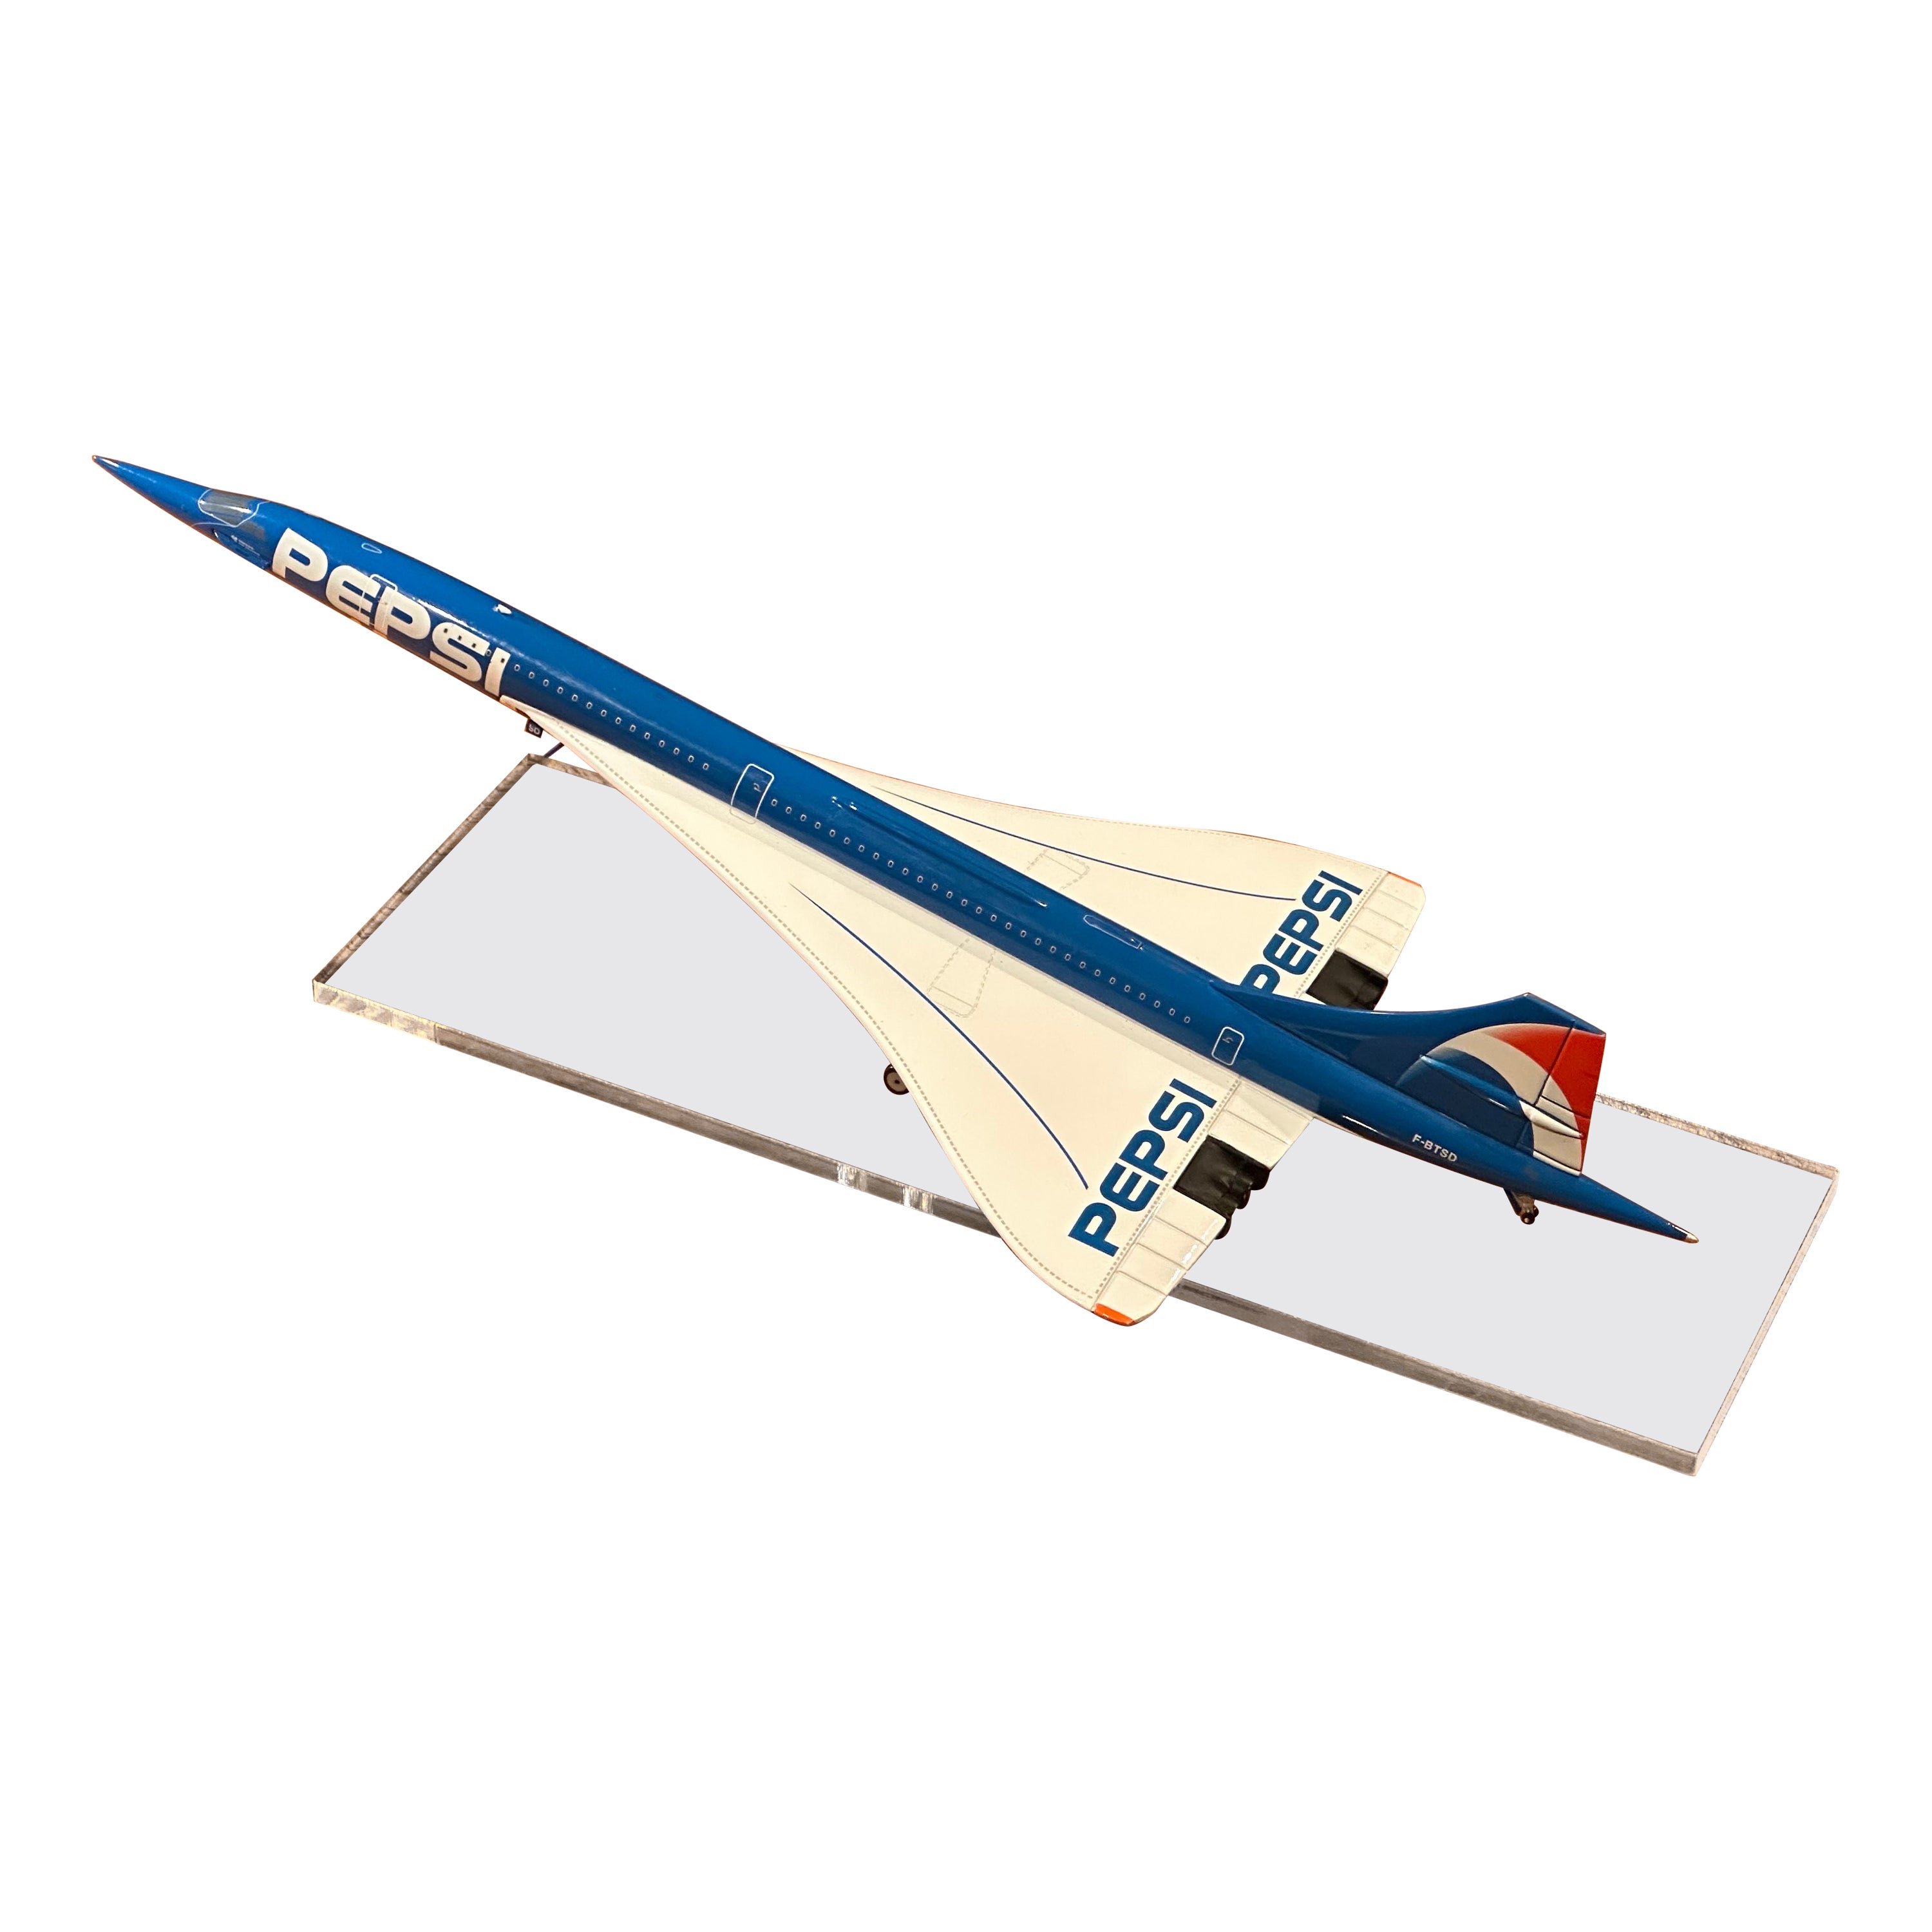 Pepsi Logoed Concorde Jetliner Desk Model on Lucite Base For Sale